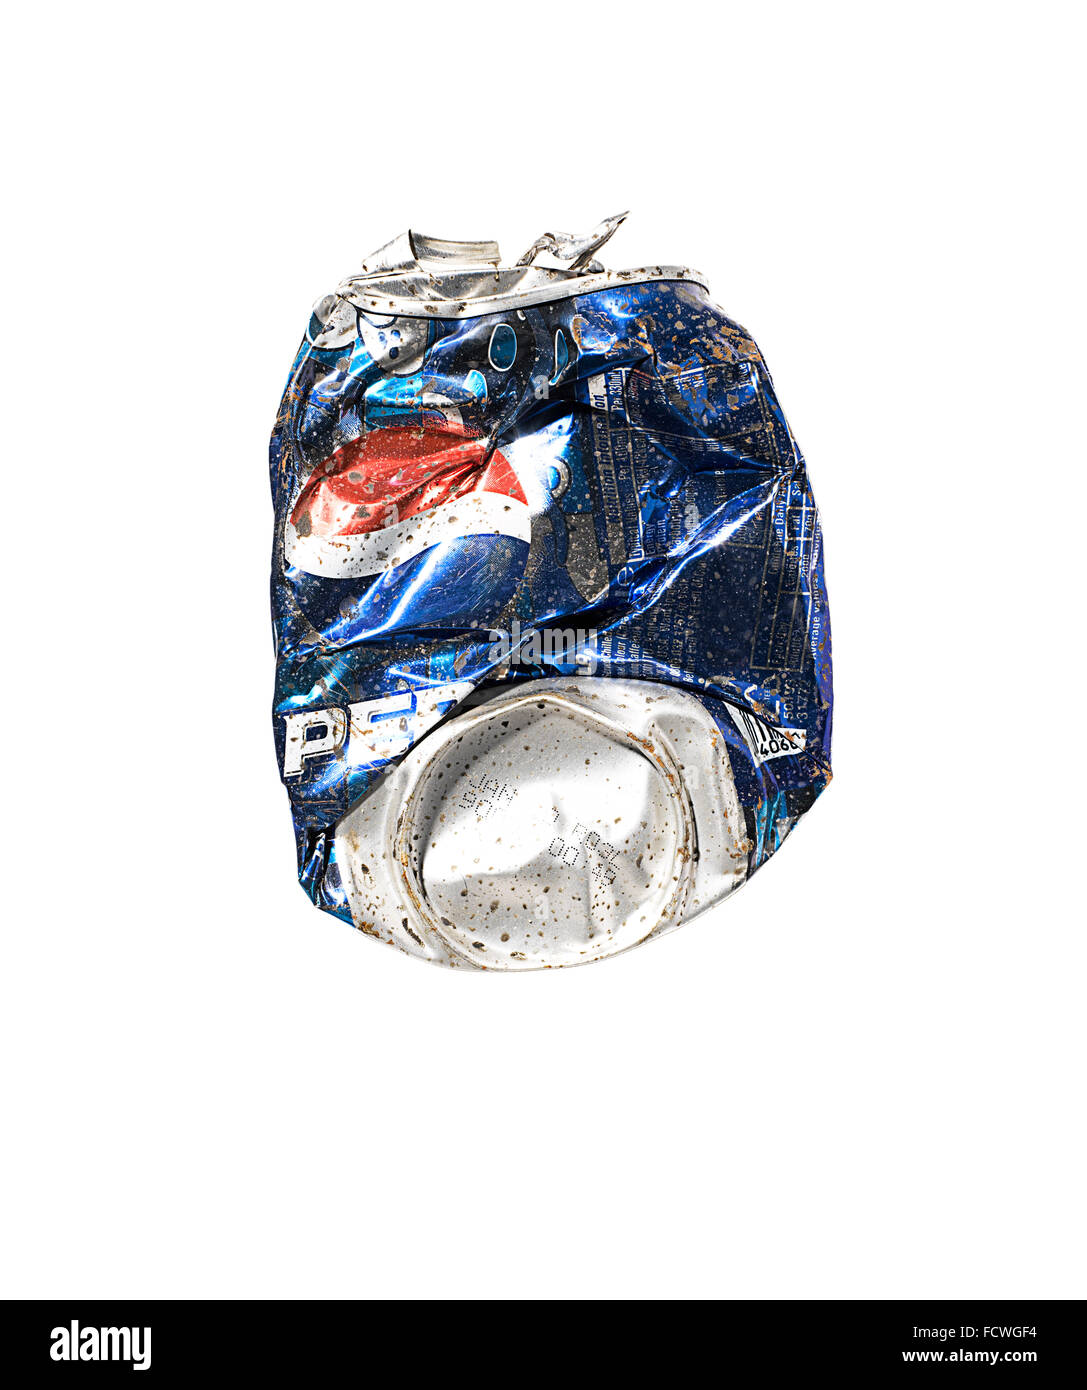 Una lata de Pepsi aplastado Foto de stock